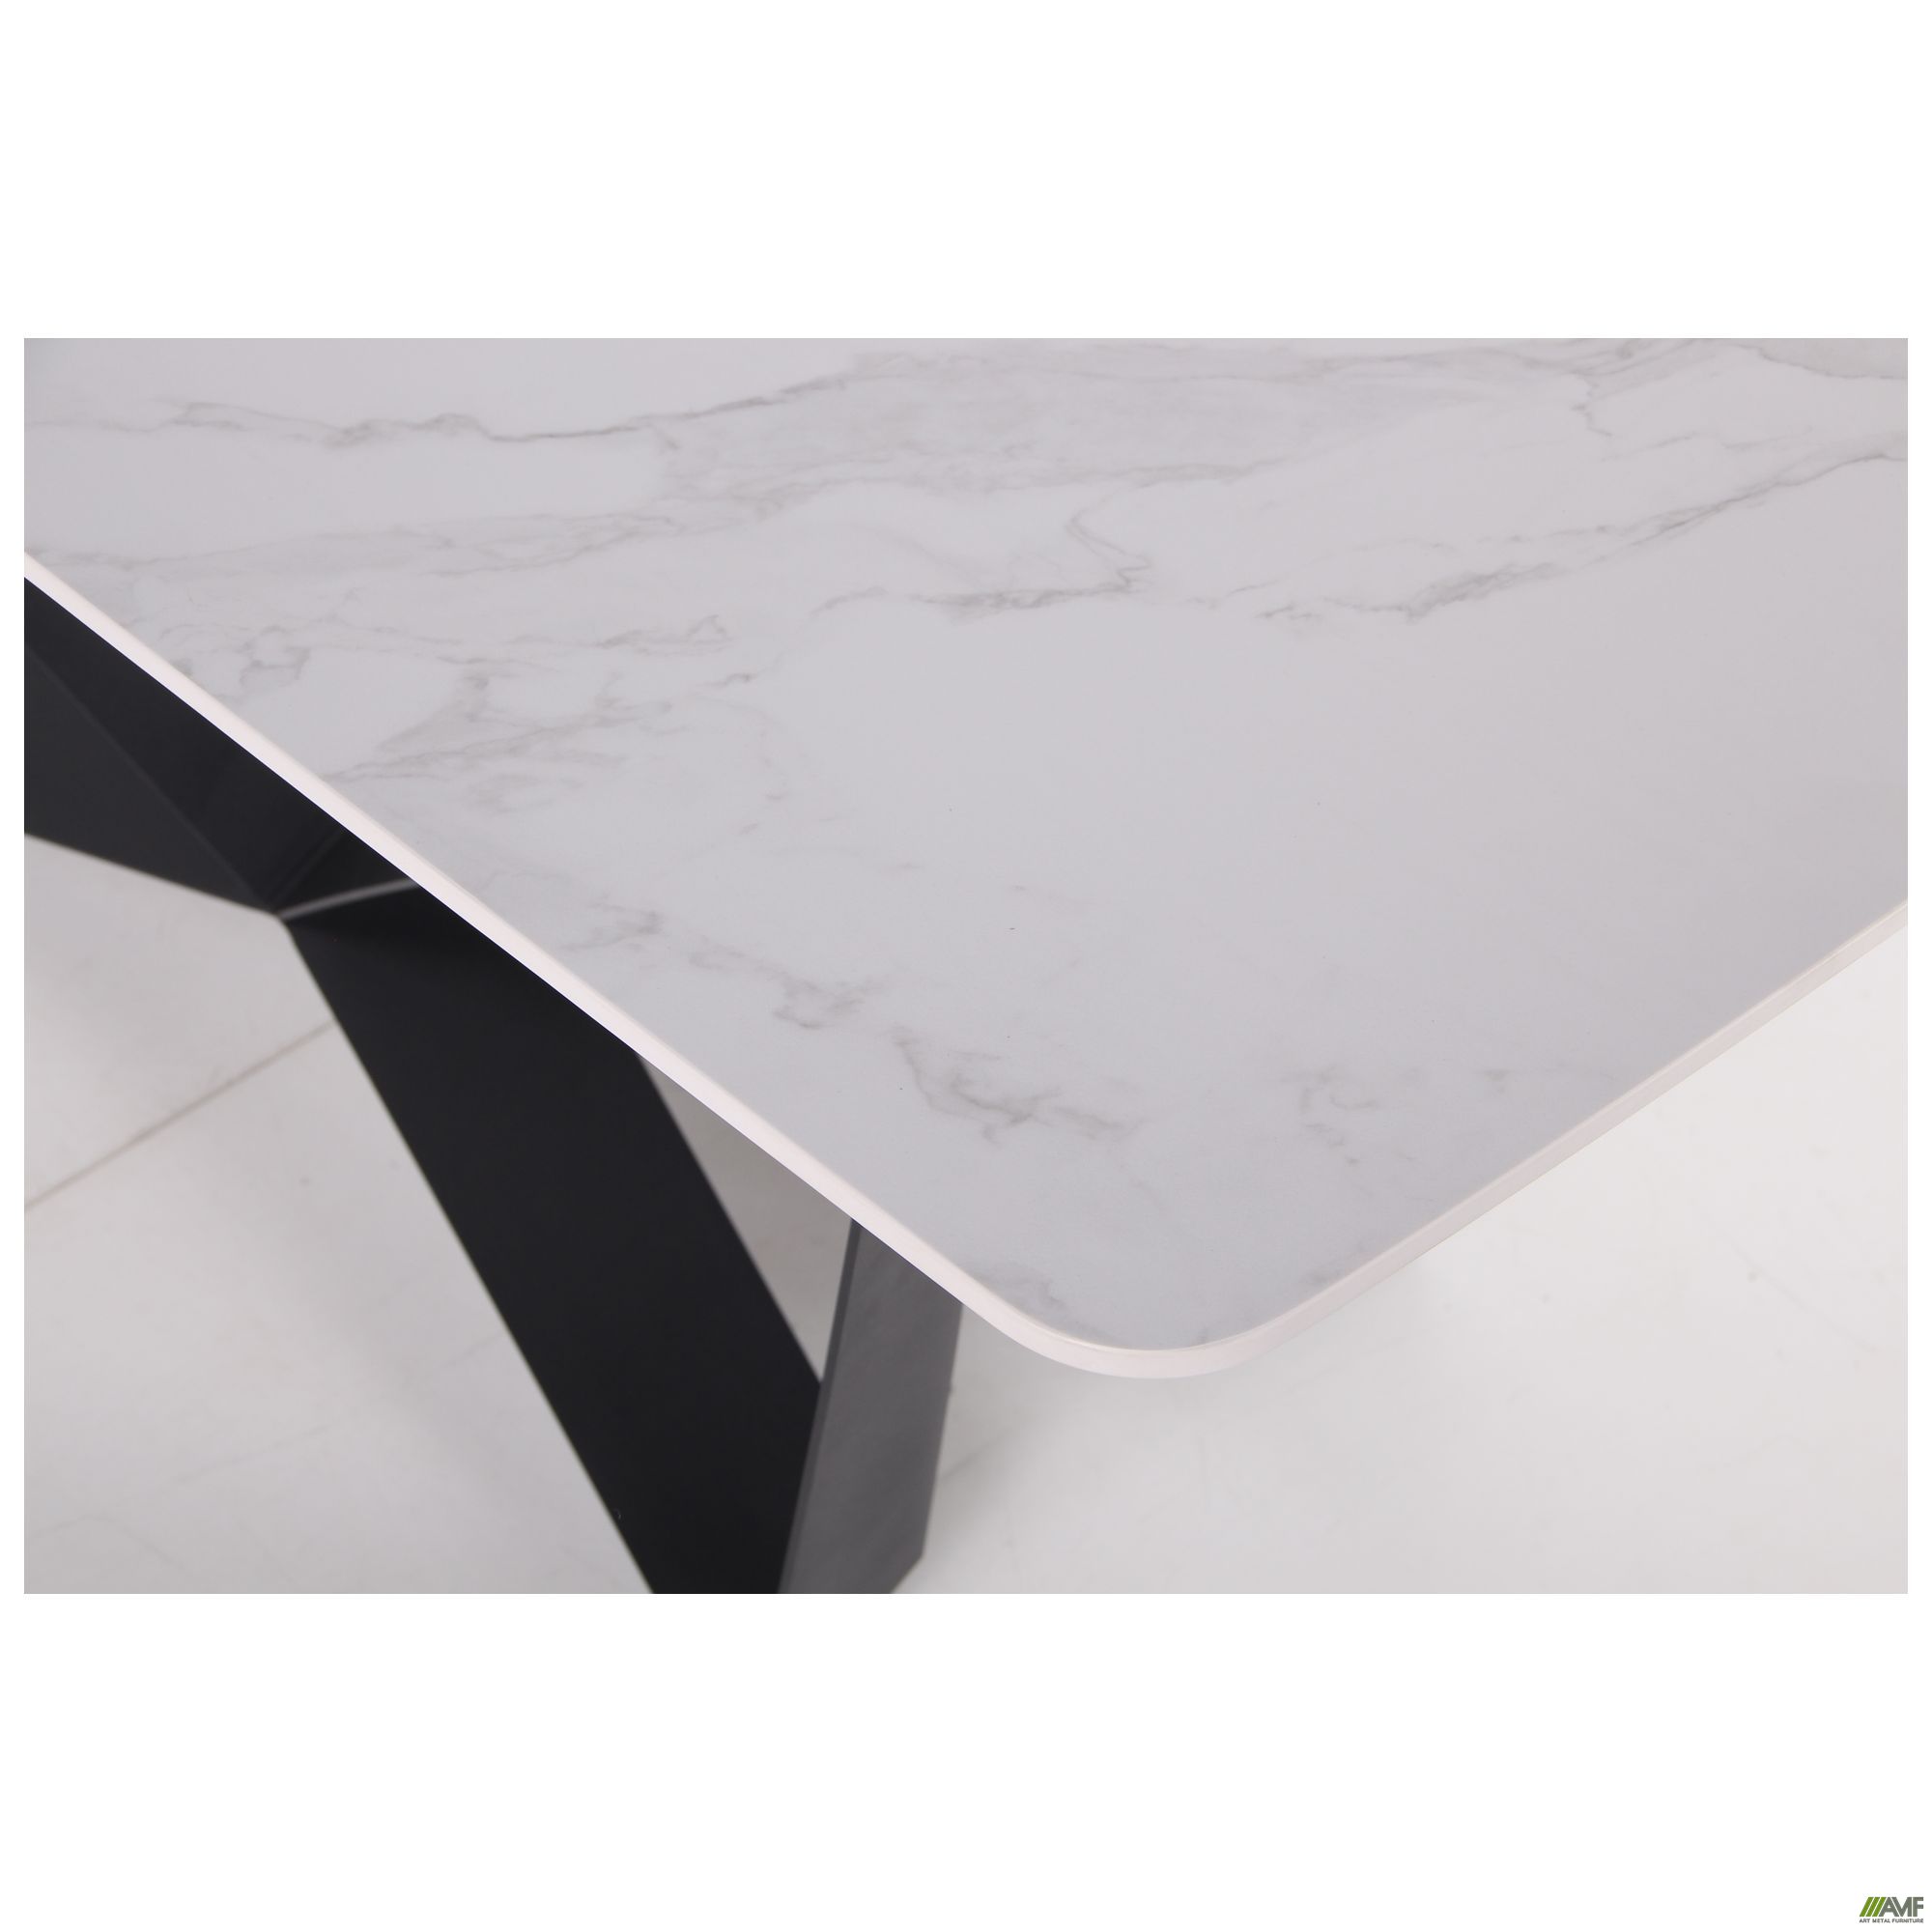 Фото 7 - Стол обеденный William black/ceramics Carrara bianco 